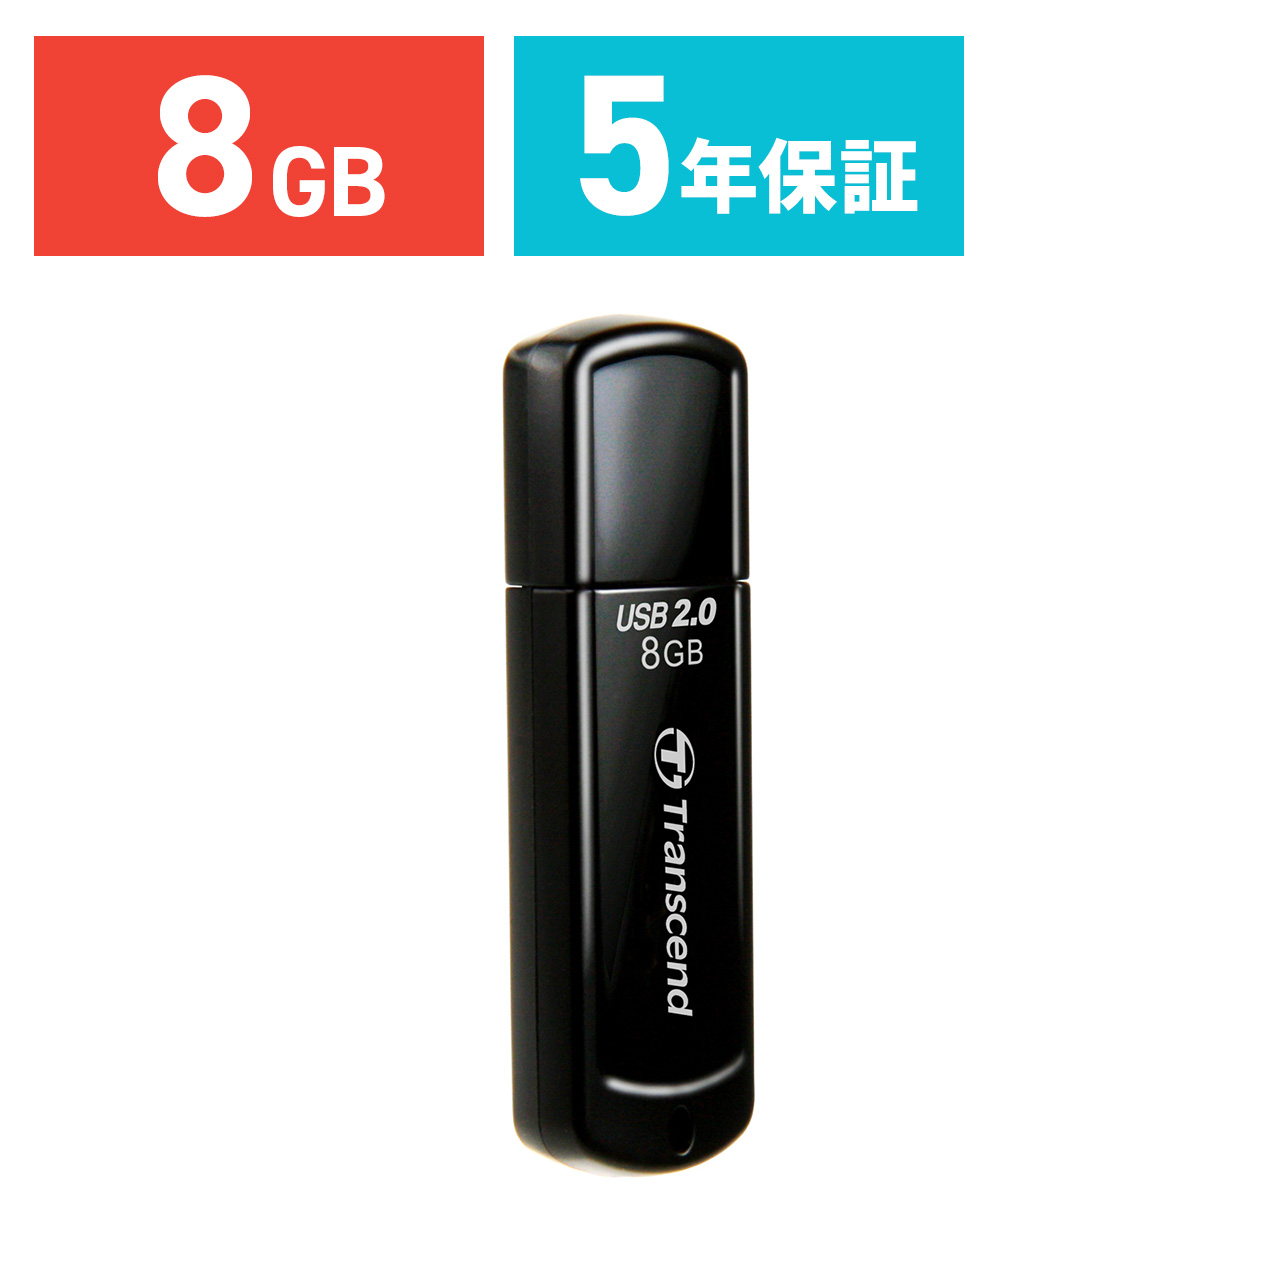 Transcend USBメモリ 8GB JetFlash 350 TS8GJF350 TS8GJF350の販売商品